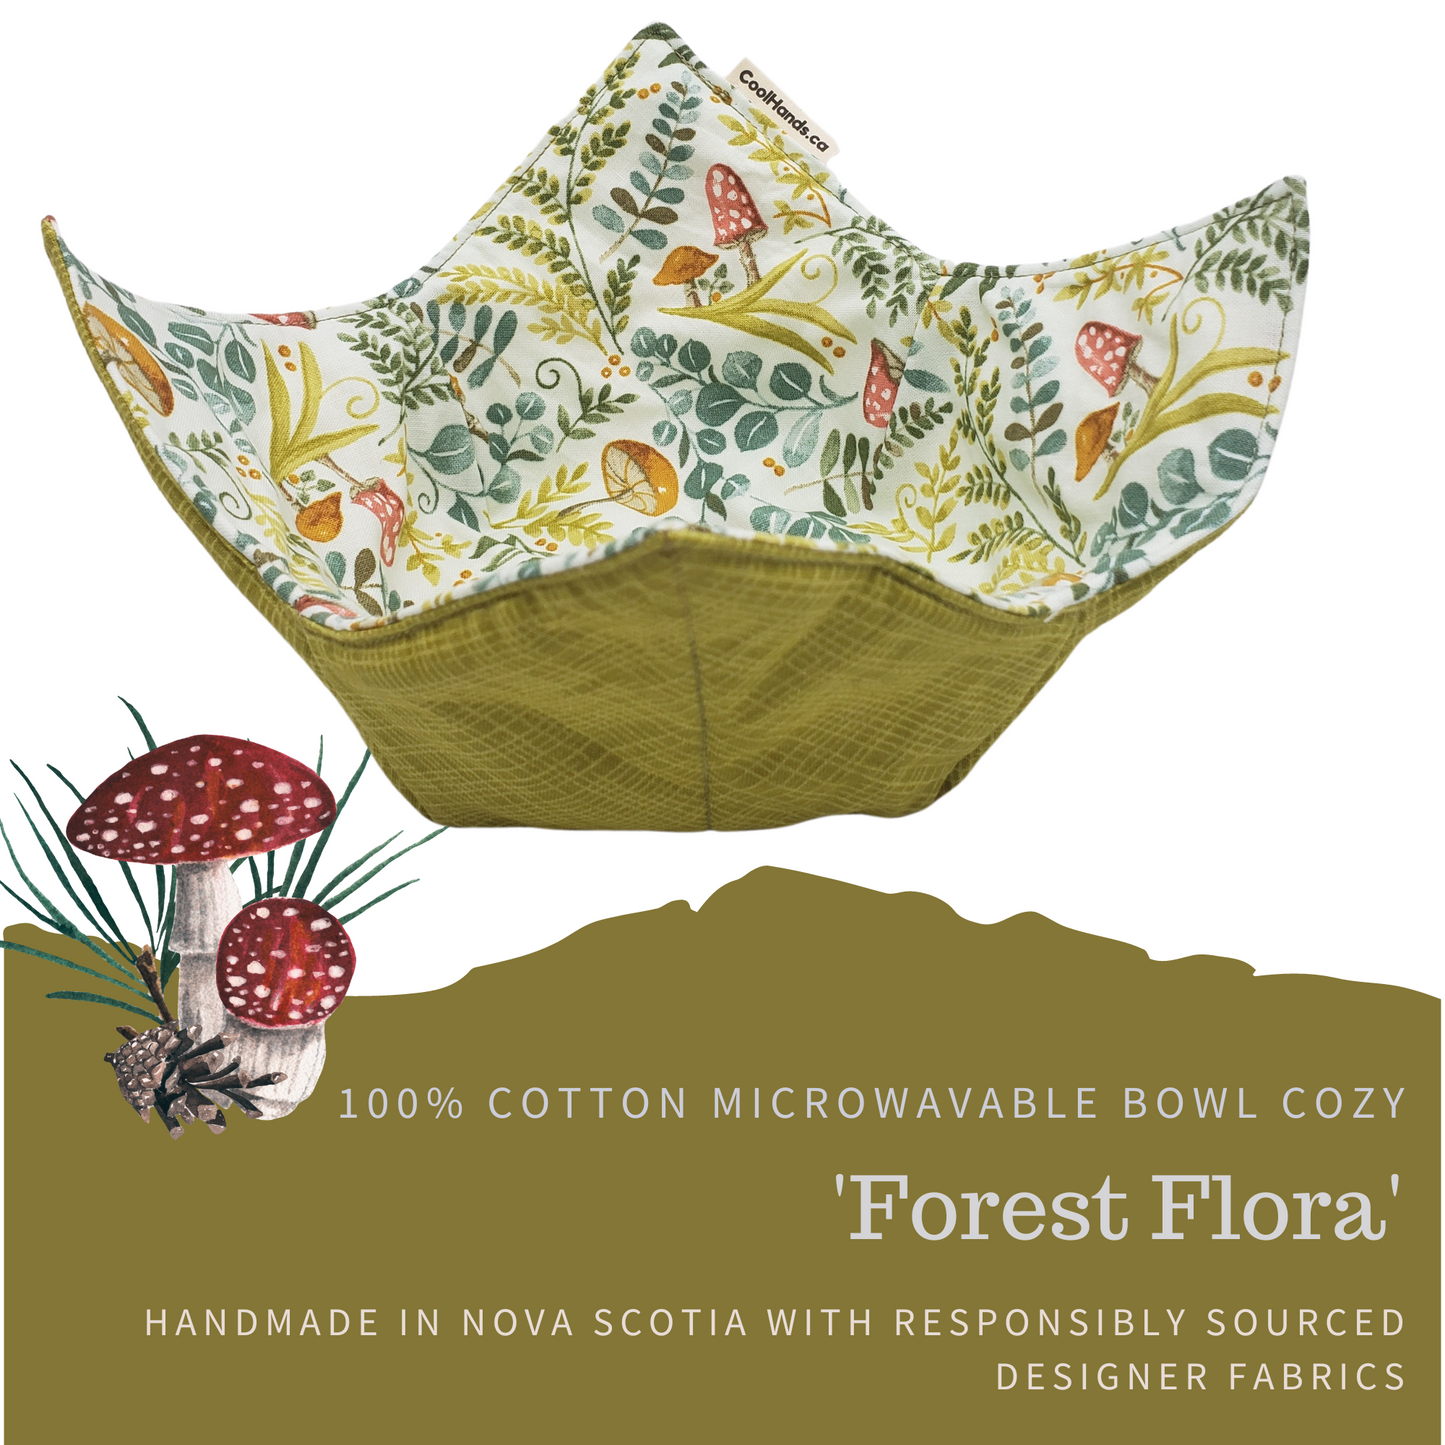 100% Cotton Microwavable Bowl Cozy - Forest Flora